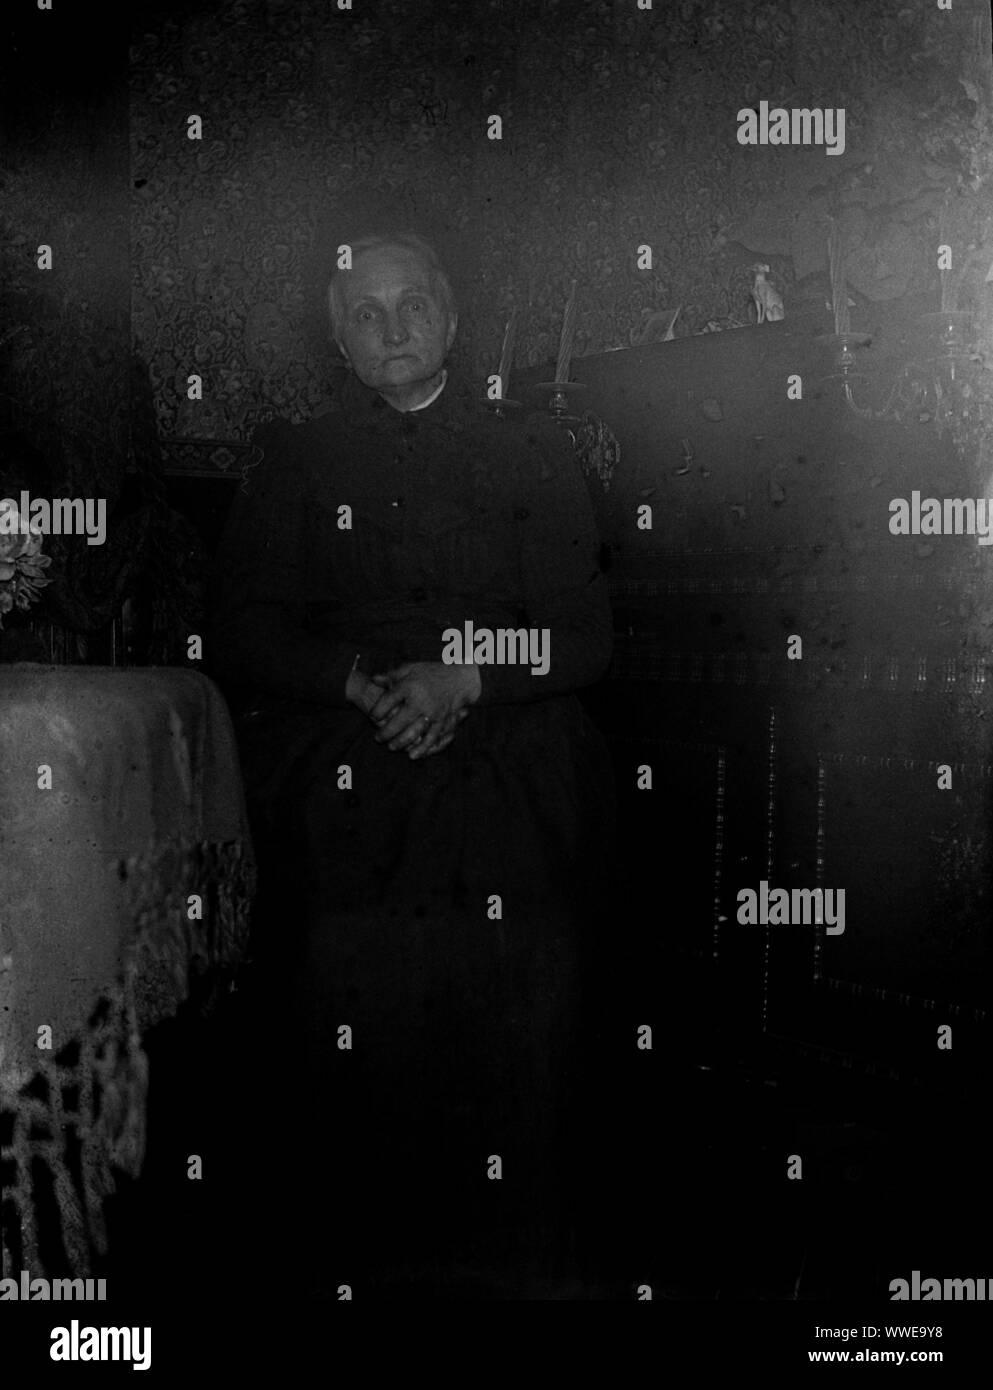 AJAXNETPHOTO. 1889-1900 (ca.). Frankreich (genaue Lage unbekannt.). - Familie SNAPSHOT-Frau sitzt im Innenbereich. Die Qualität von schlecht belichteten Original Bild. Bild vom ursprünglichen GLASPLATTE NEGATIV; DATUM QUELLE VON GLASPLATTE BOX DECKEL. Fotograf: unbekannt © DIGITAL IMAGE COPYRIGHT AJAX VINTAGE BILDARCHIV QUELLE: AJAX VINTAGE BILDARCHIV SAMMLUNG REF: AVL PEO FRA 1889 109 Stockfoto